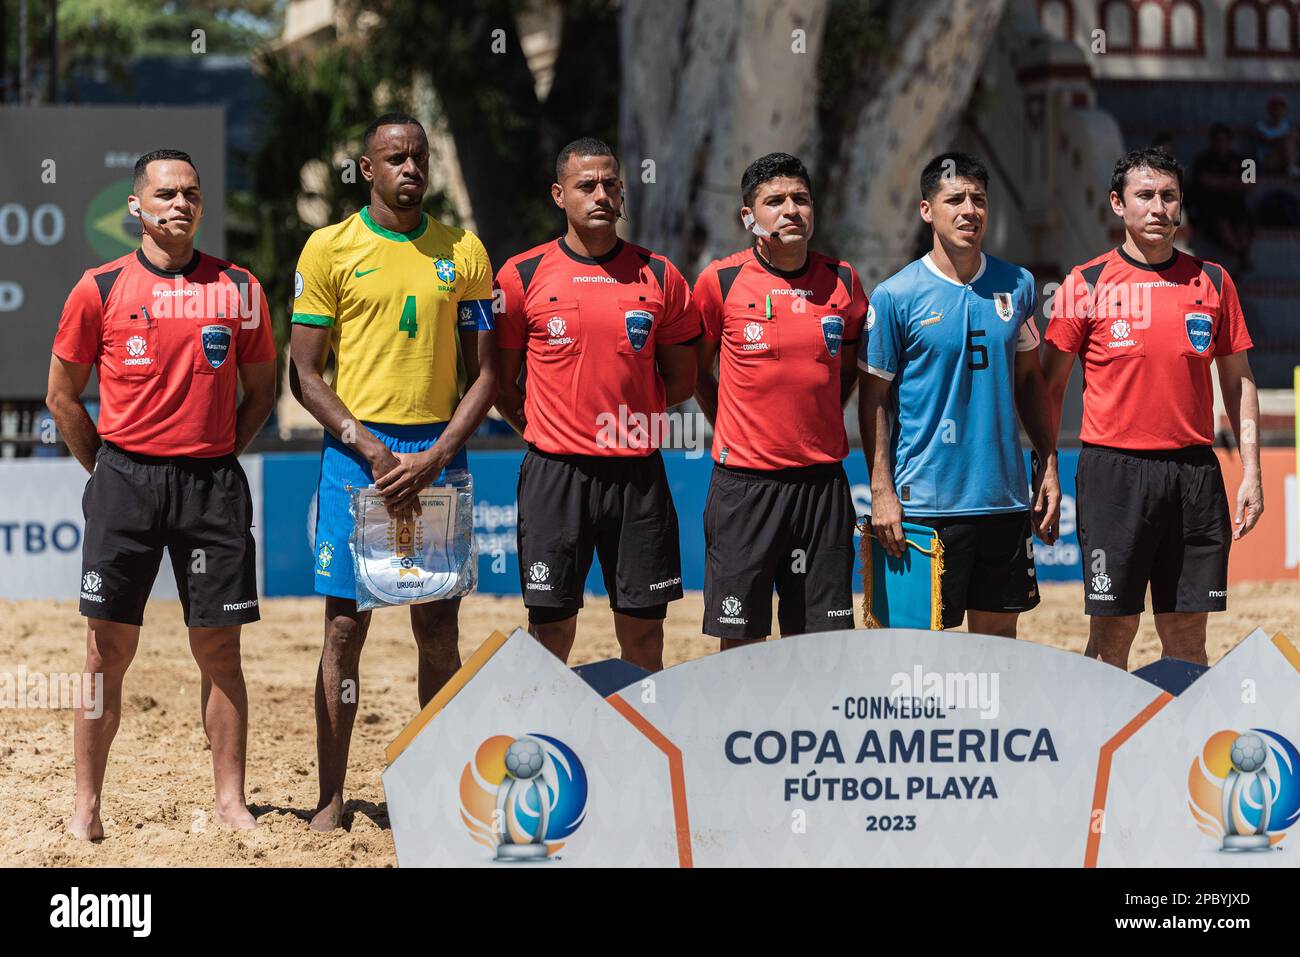 Copa America Playa 2023 – CONMEBOL Copa America